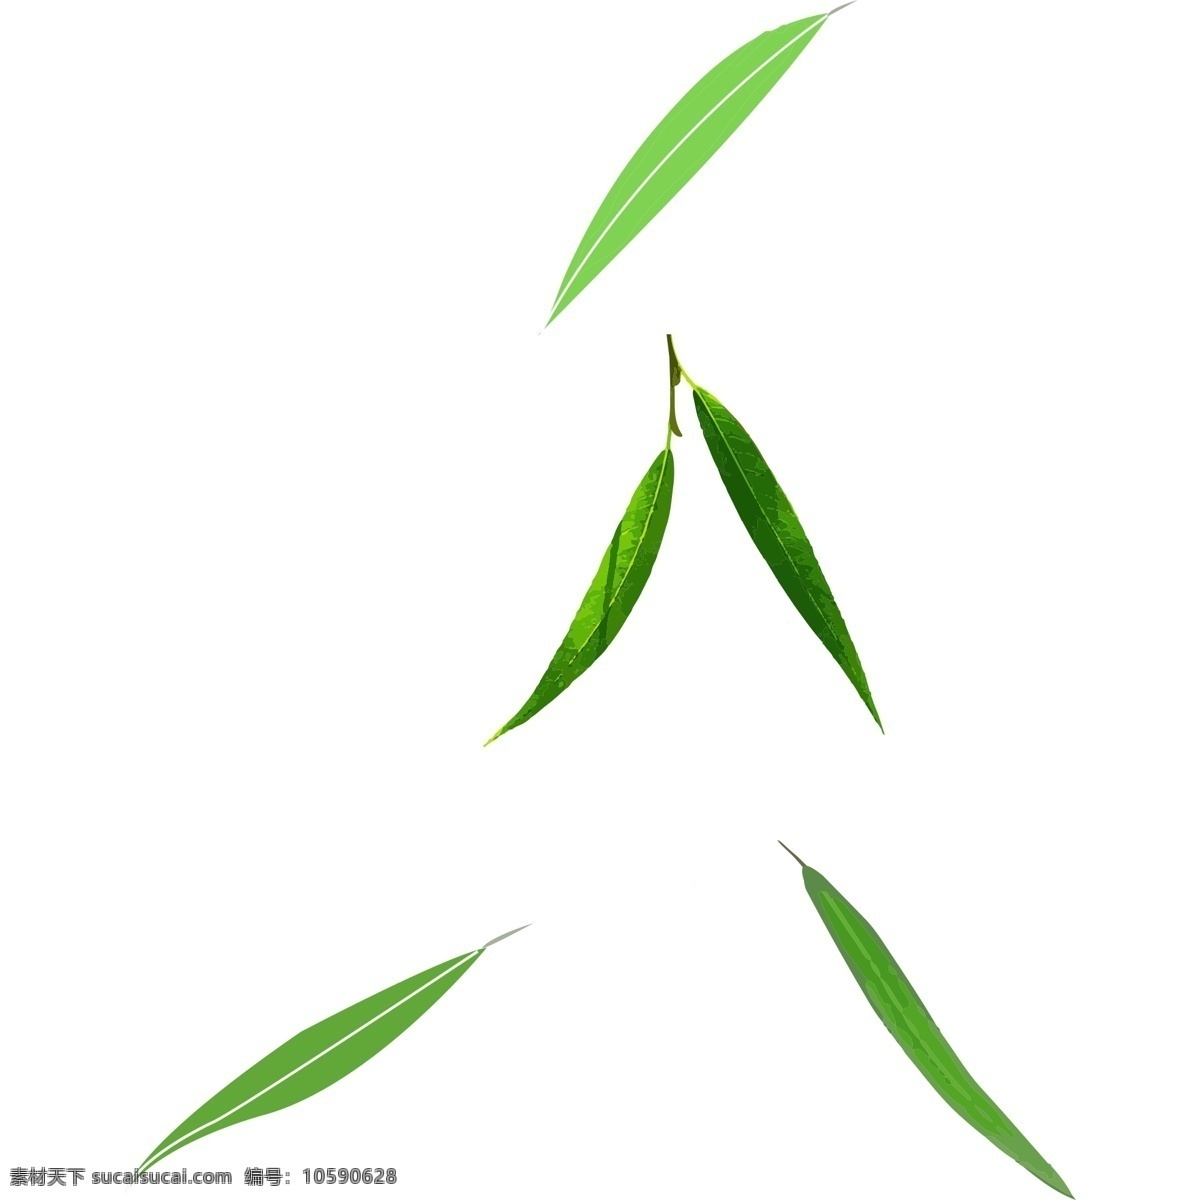 绿色 叶子 卡通 免 抠 图 绿色枝条 植物生长 手绘 新鲜鲜艳 美丽动人 绿色叶子 卡通插画 艺术插画